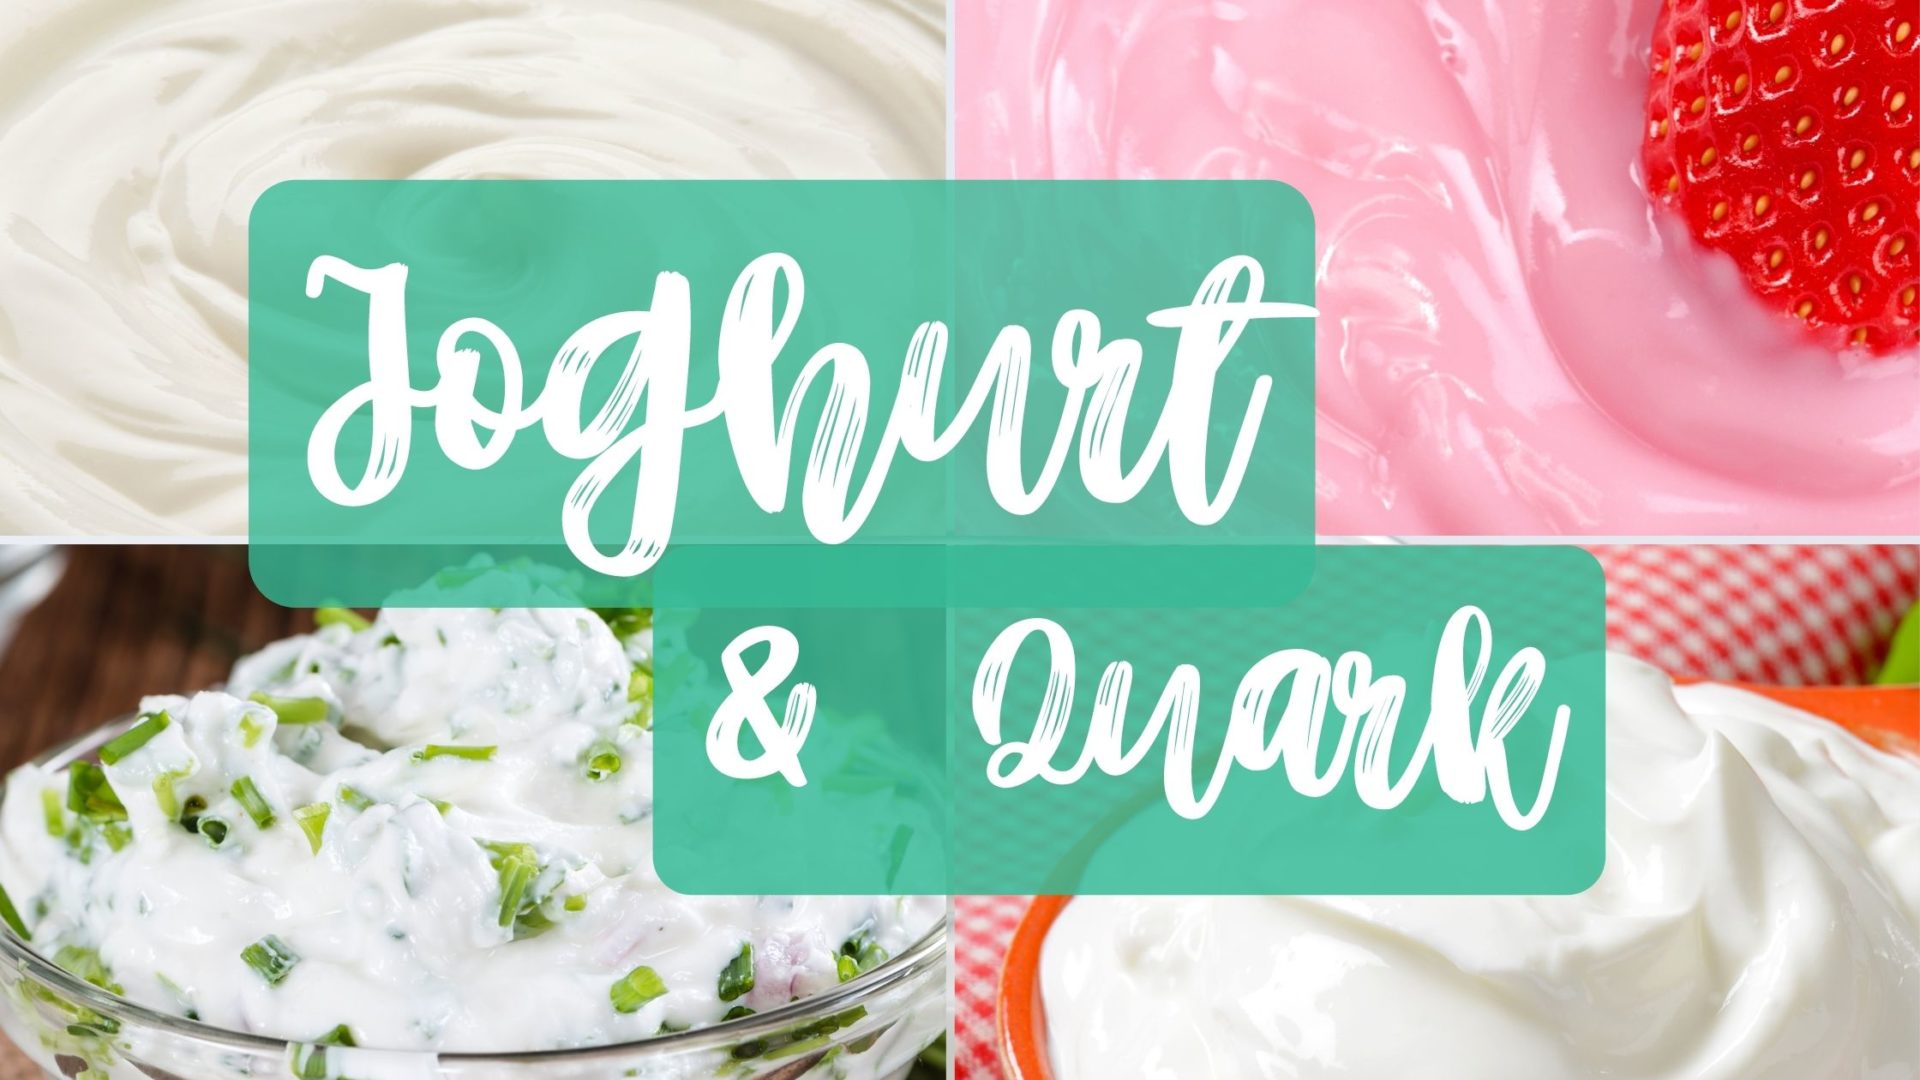 Veganer Joghurt und Quark aus dem Einzelhandel